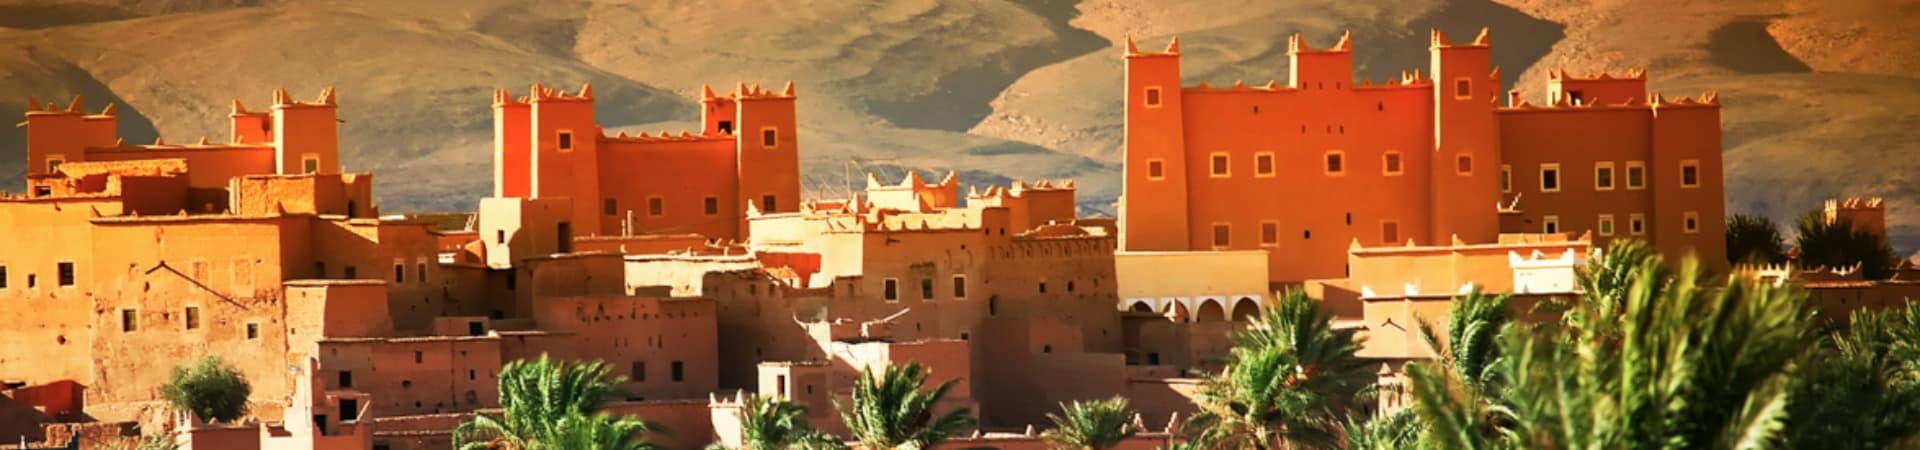 Viagem Marrocos: Kasbah marroquino